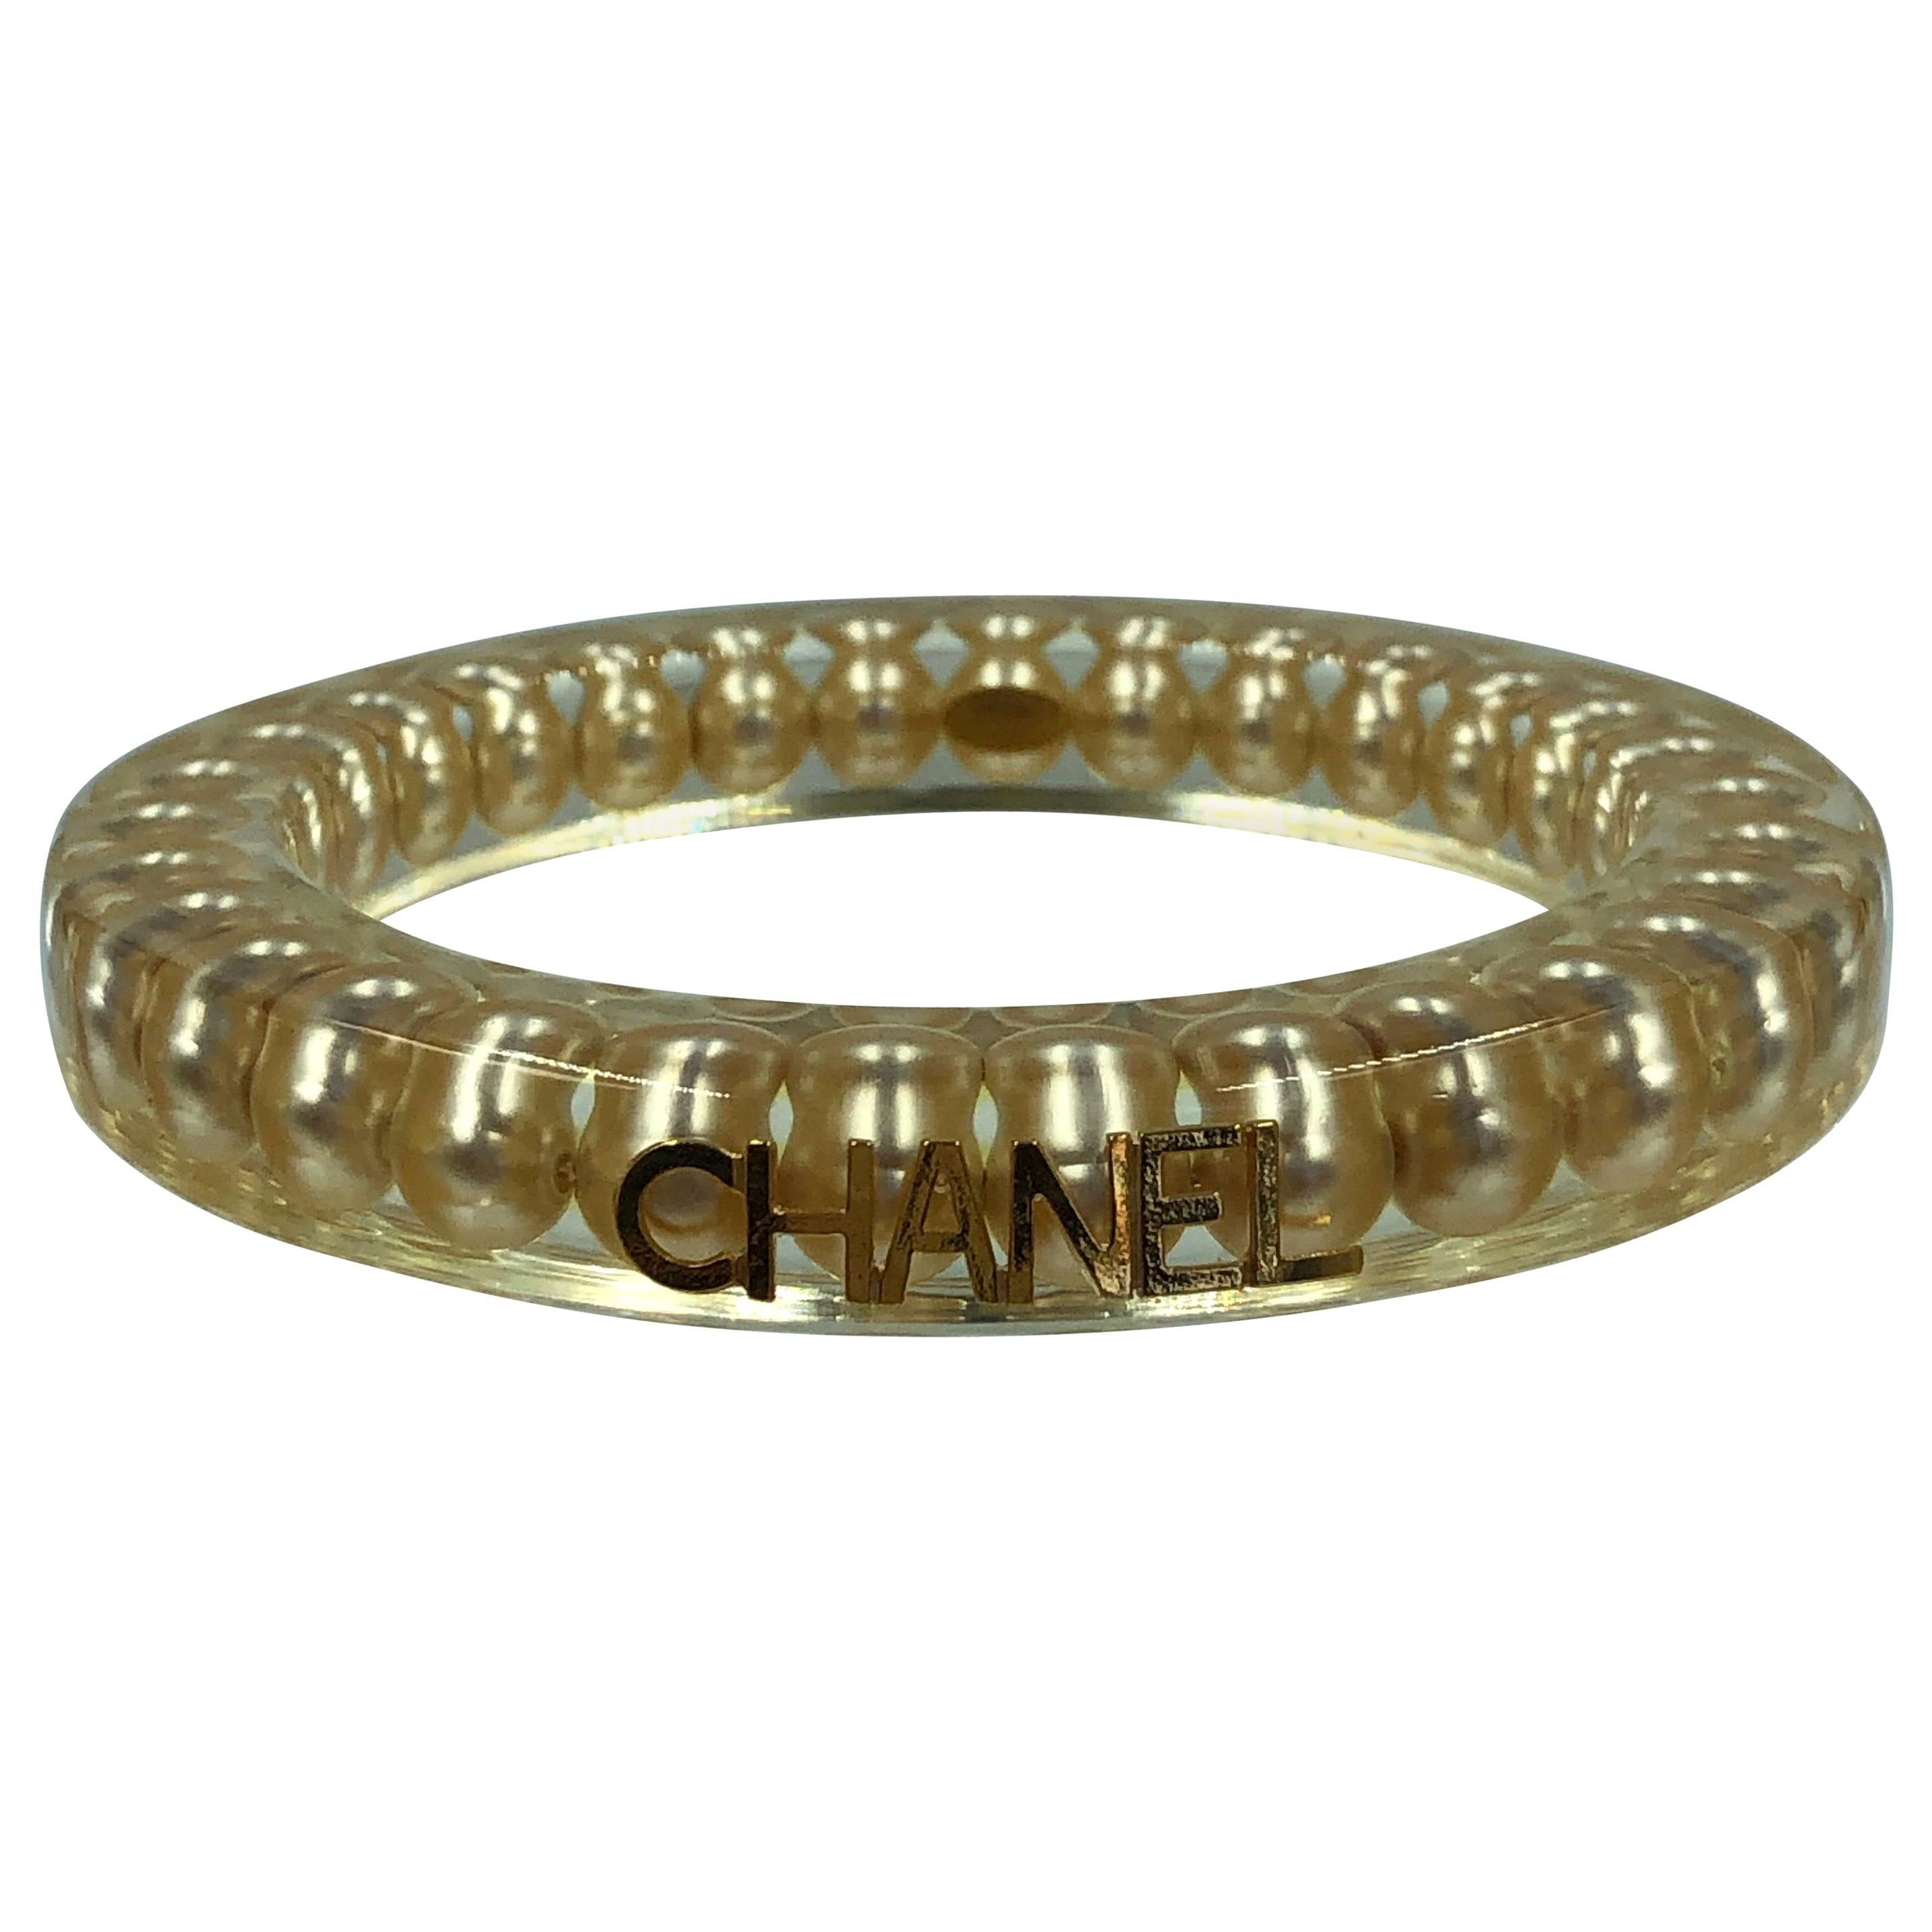 Chanel Rare Authentic Lucite Faux Pearl Bangle Bracelet